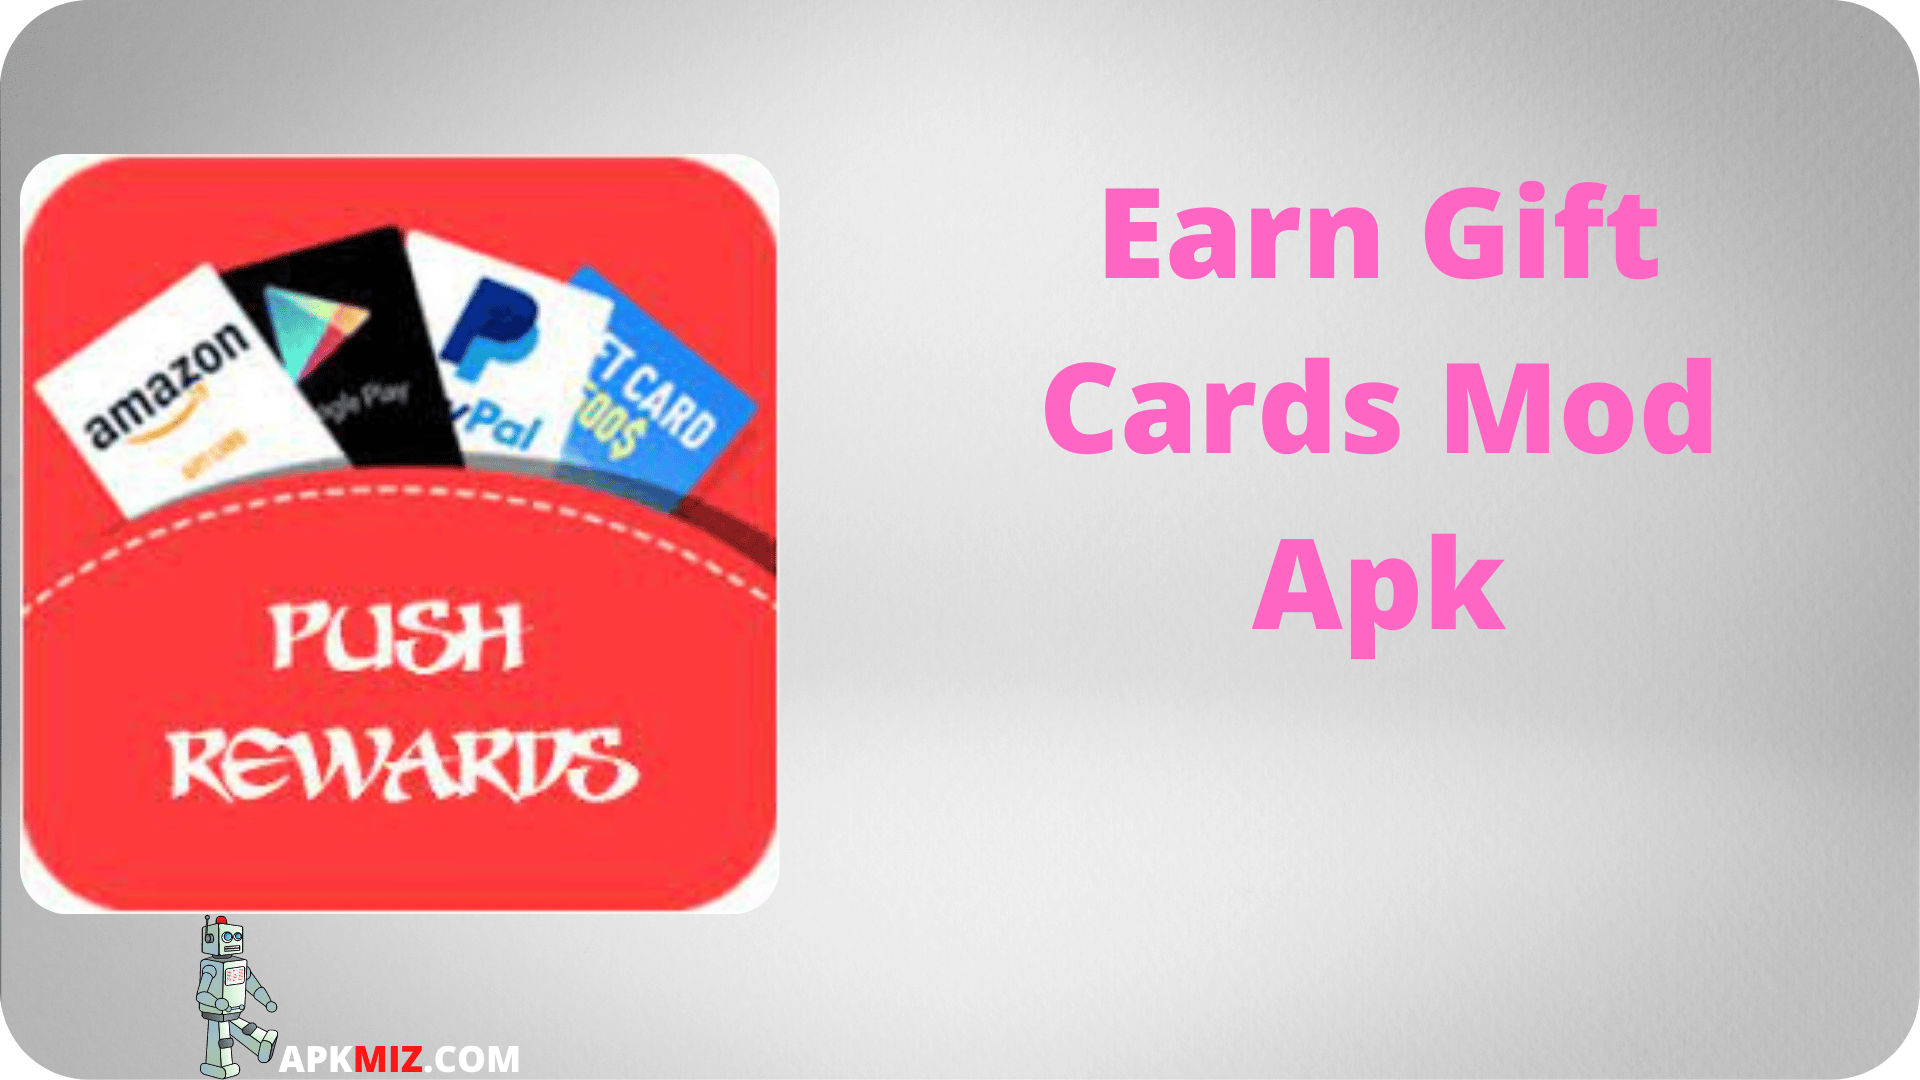 Earn Gift Cards Mod Apk